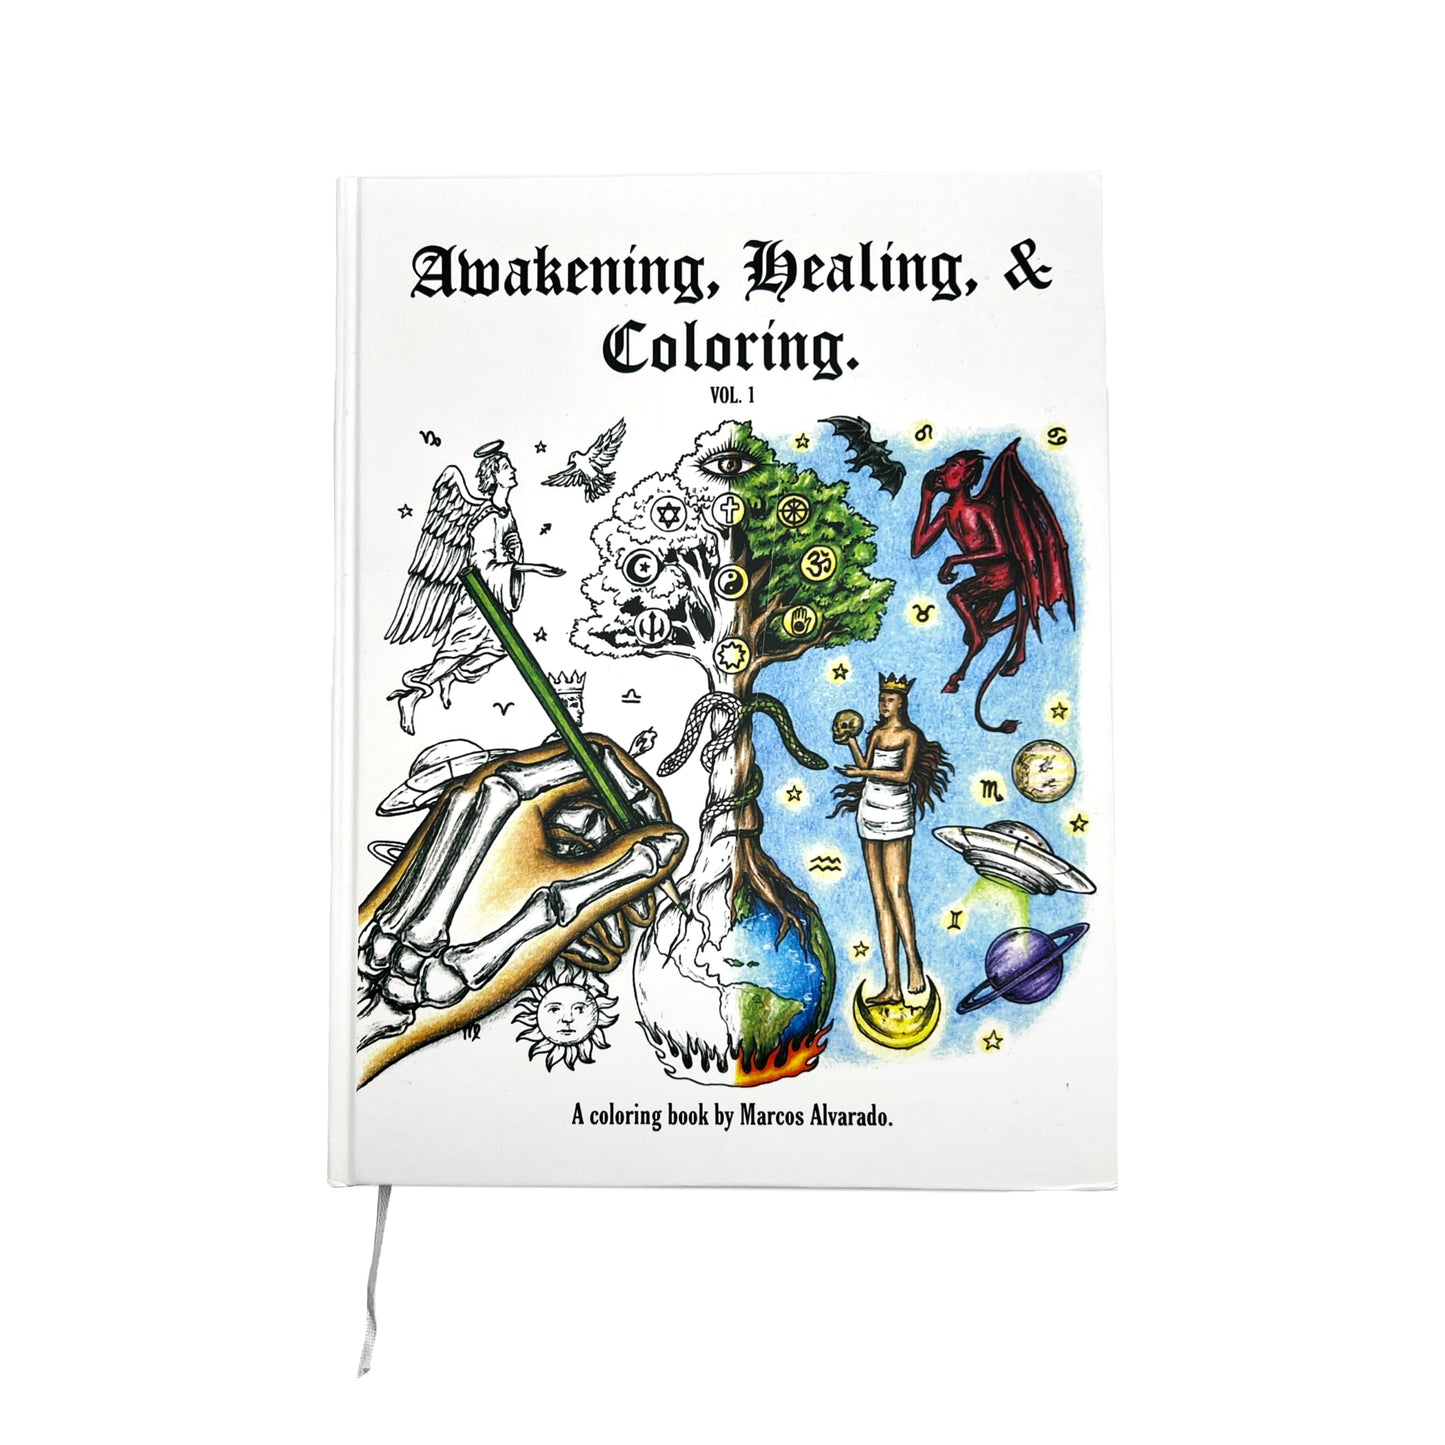 “Awakening, Healing & Coloring” Coloring Book